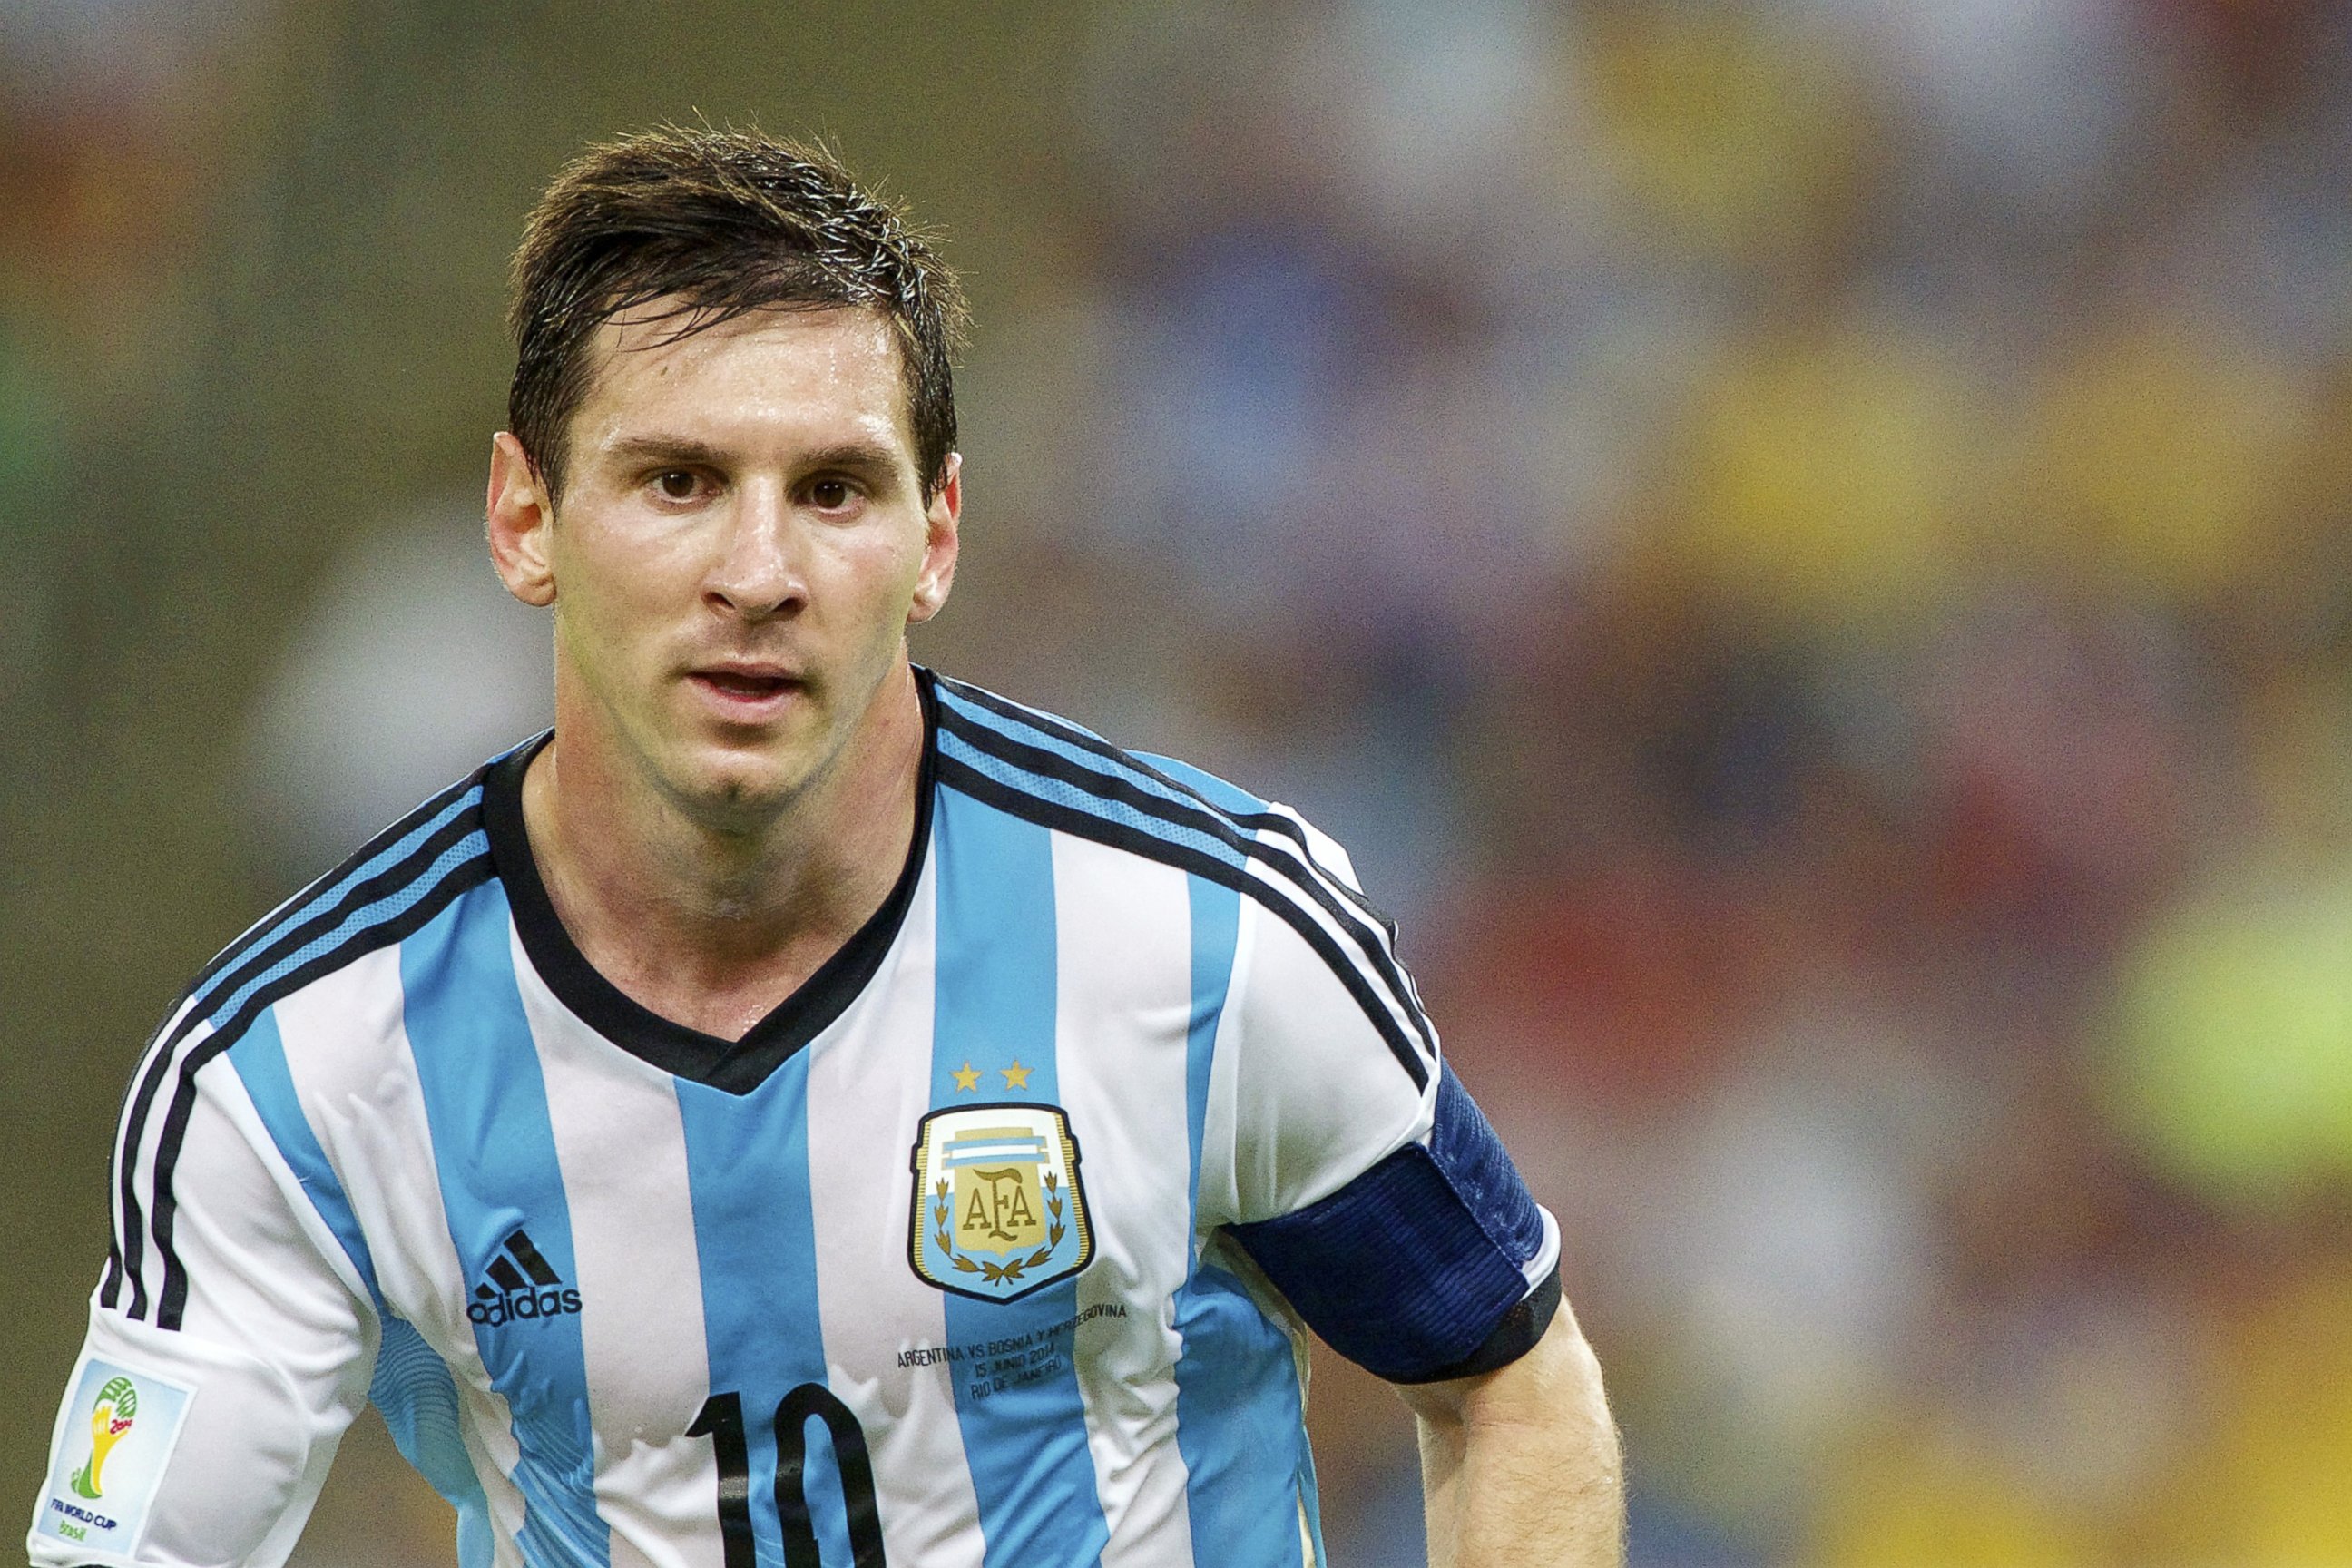 Rio De Janeiro, Brazil. 13th July, 2014. Argentina's Lionel Messi